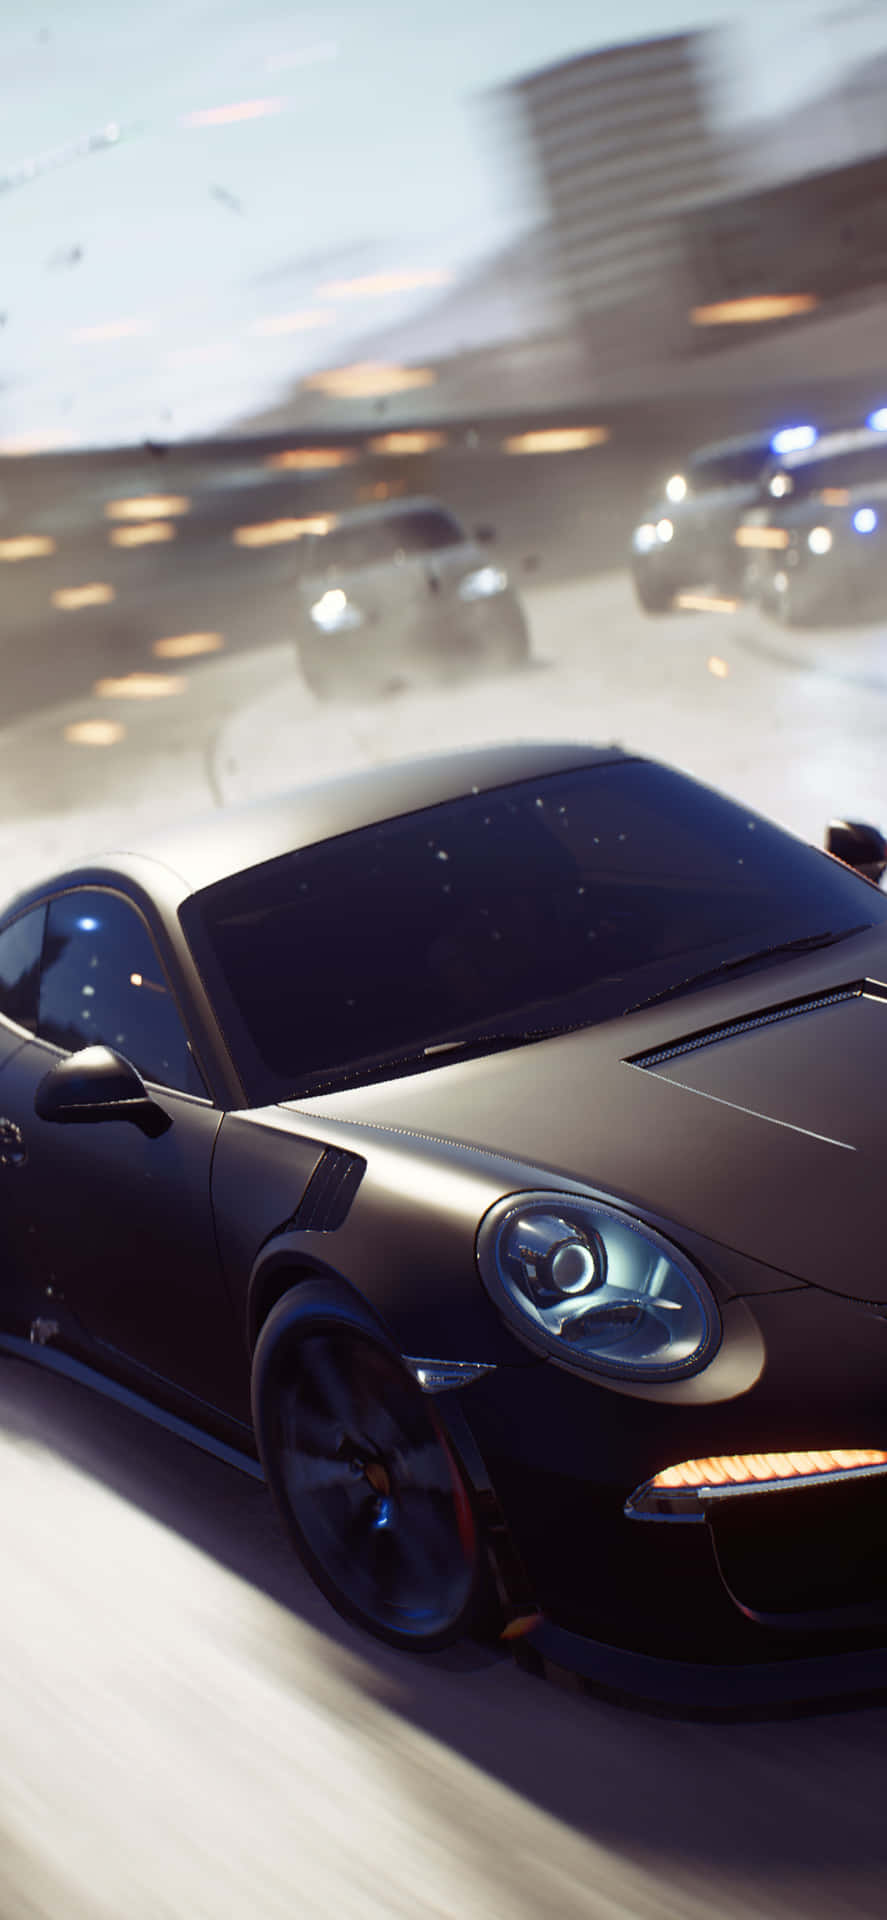 Fondode Pantalla Para Iphone Xs De Need For Speed Payback Con Un Porsche 911 Negro.